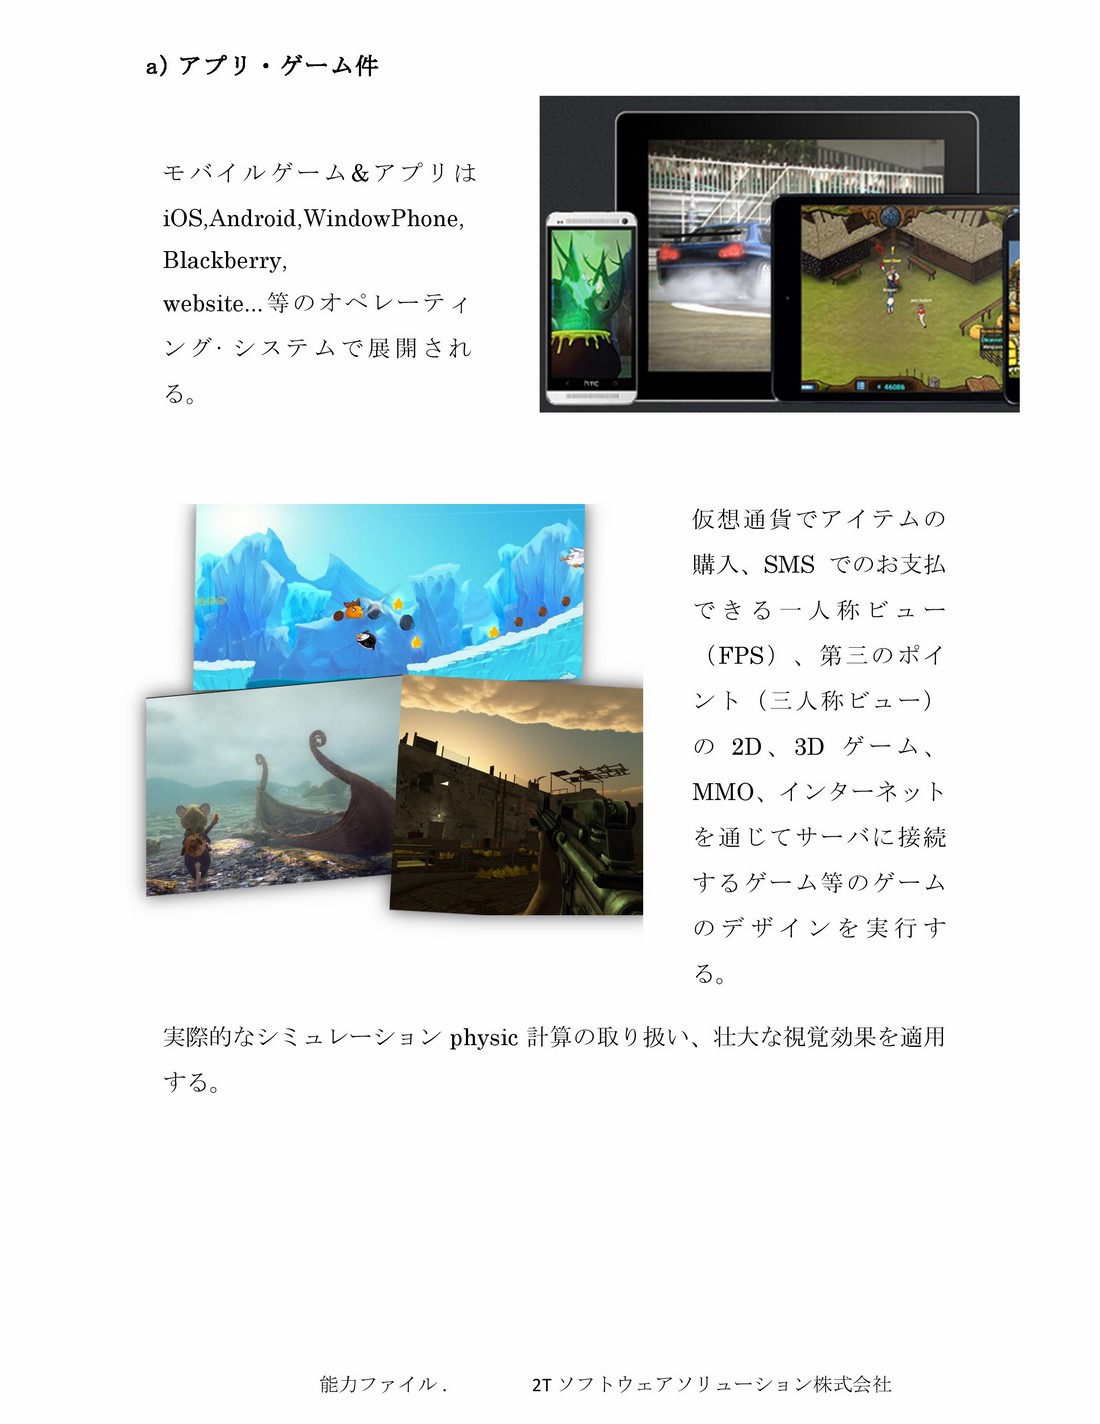 2TS Profile_jap_2015-10-21-page-030 (Copy)